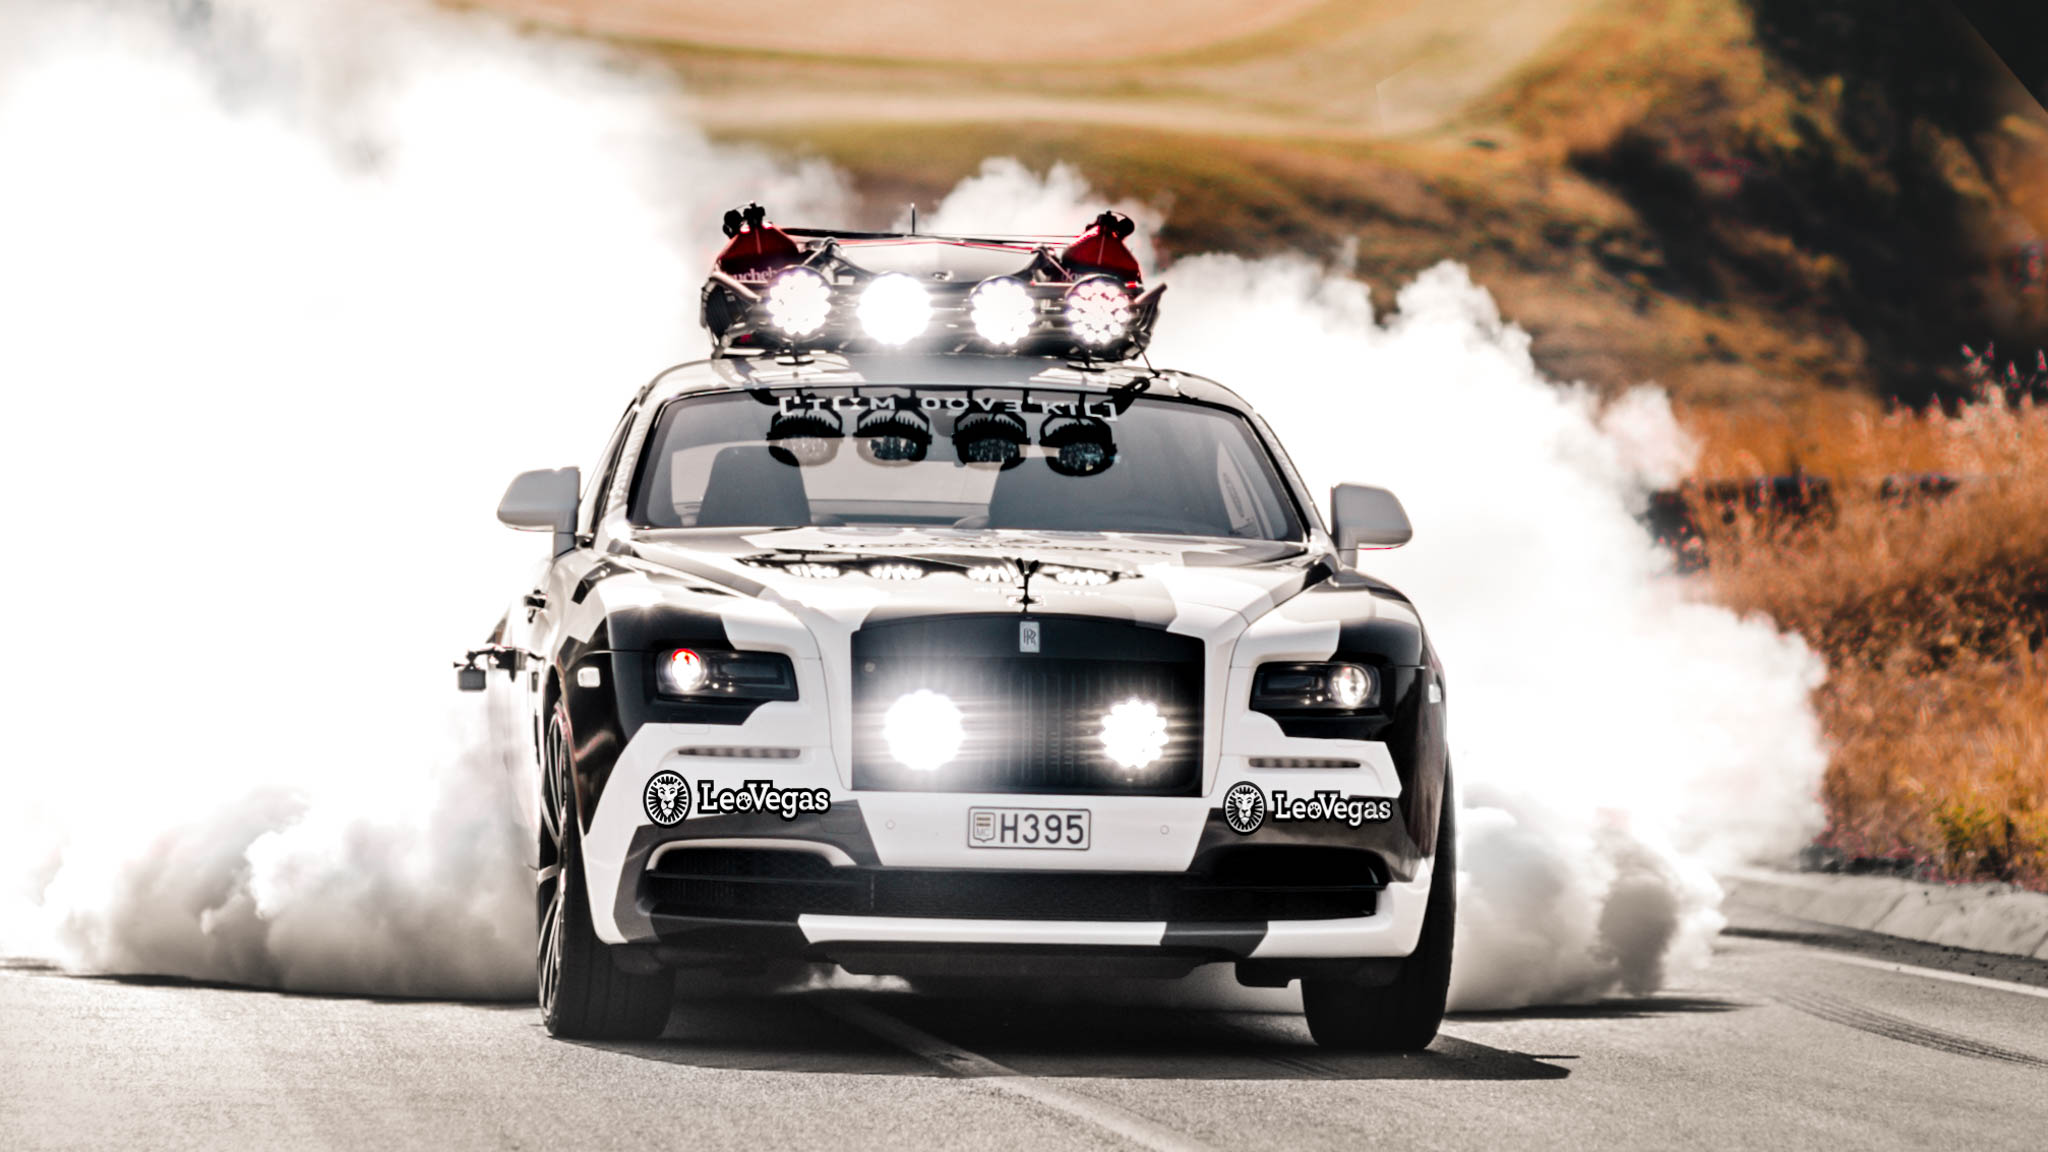 Da ist das Ding! Rolls-Royce Wraith von Jon Olsson steht zum Verkauf